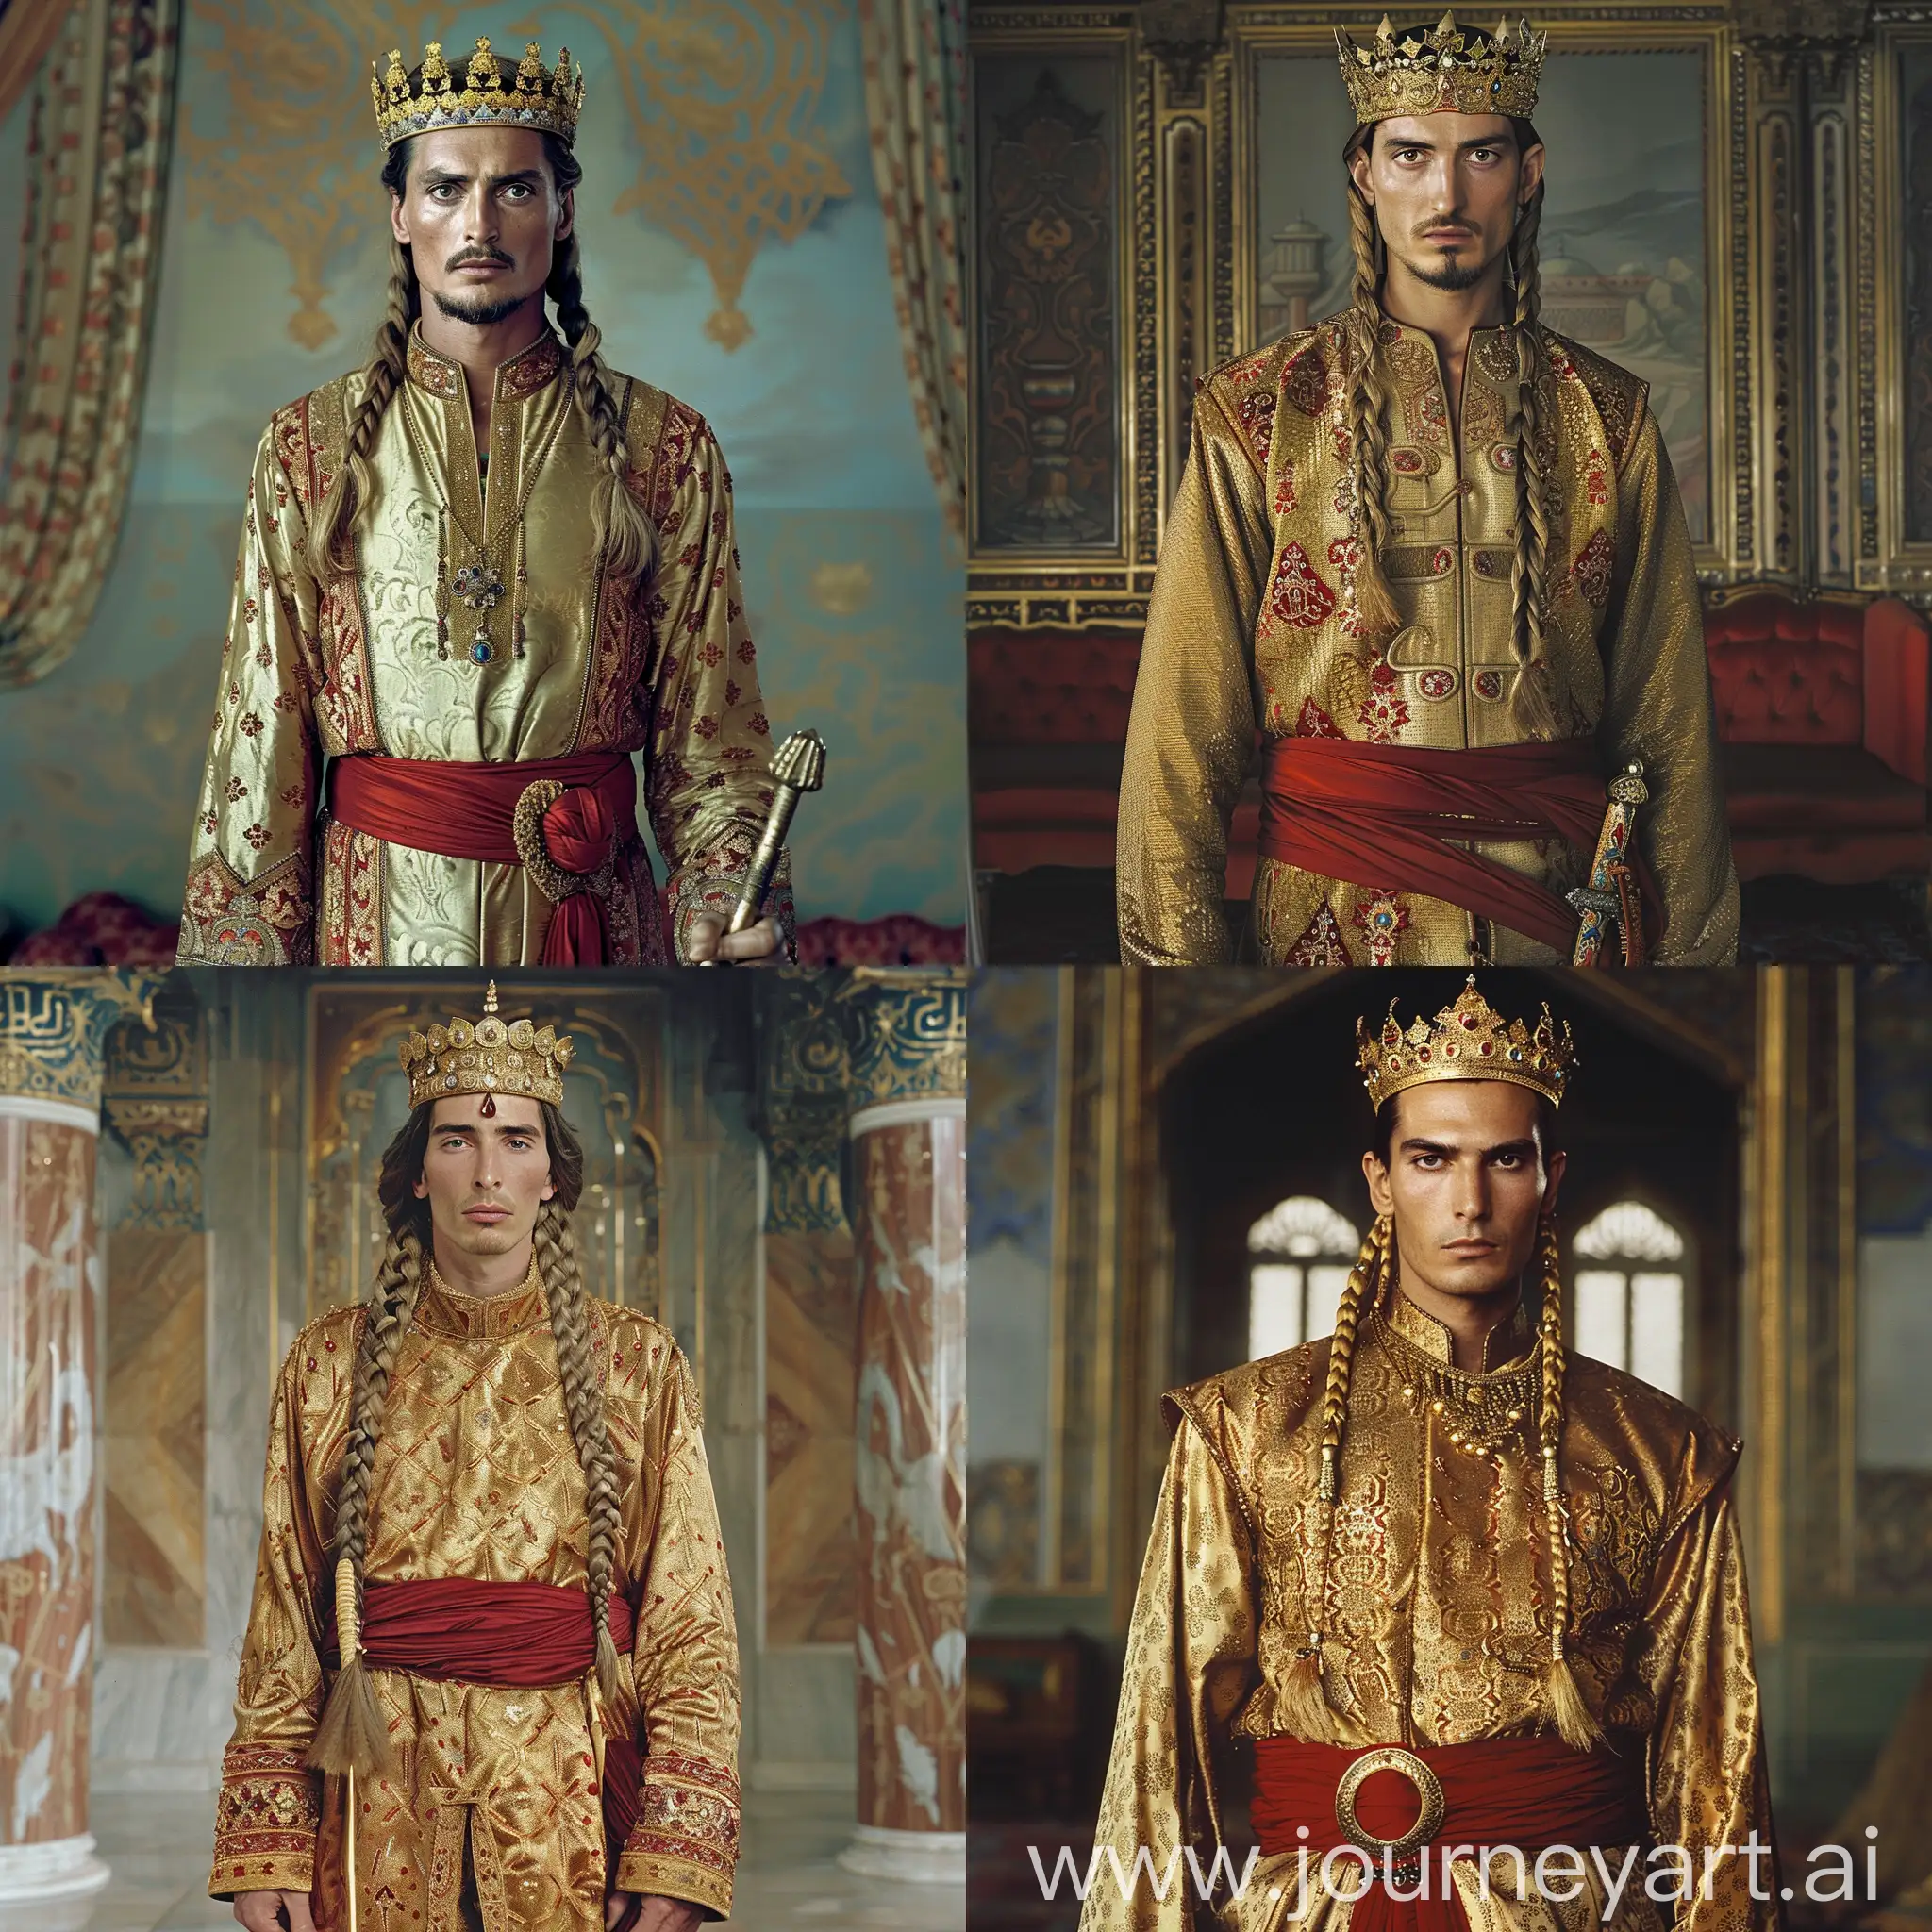 Seljuk-Ruler-Adorned-in-Opulent-Gold-Robes-and-Gemencrusted-Crown